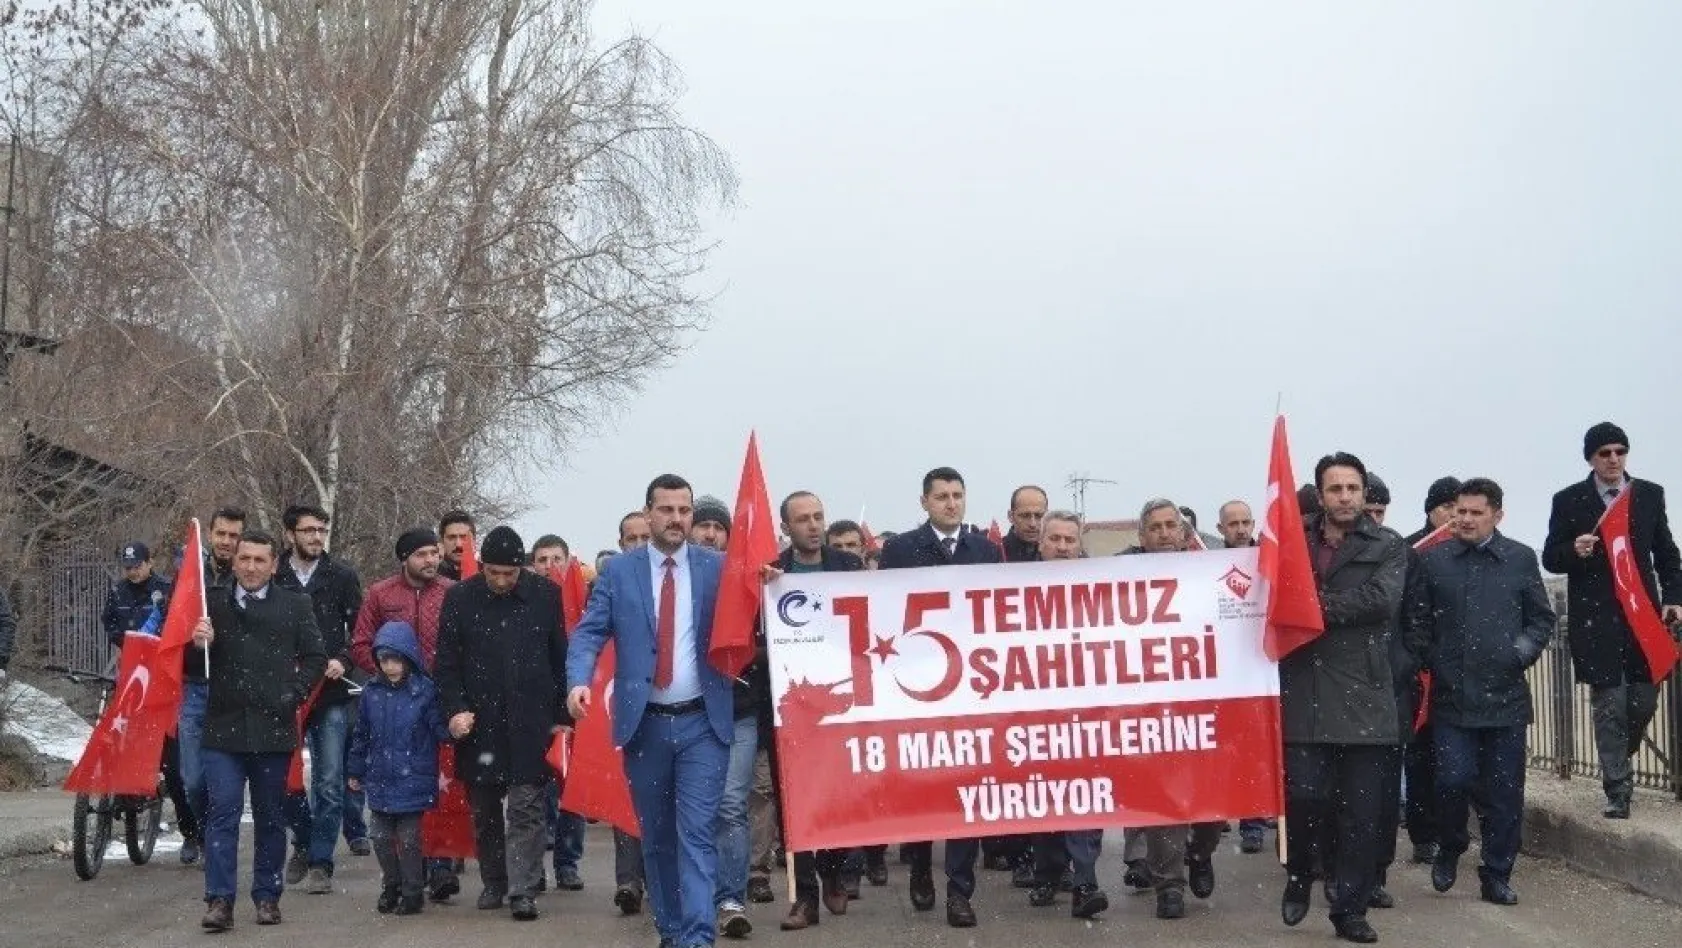 18 Mart Şehitleri için yürüyüş programı düzenlendi
